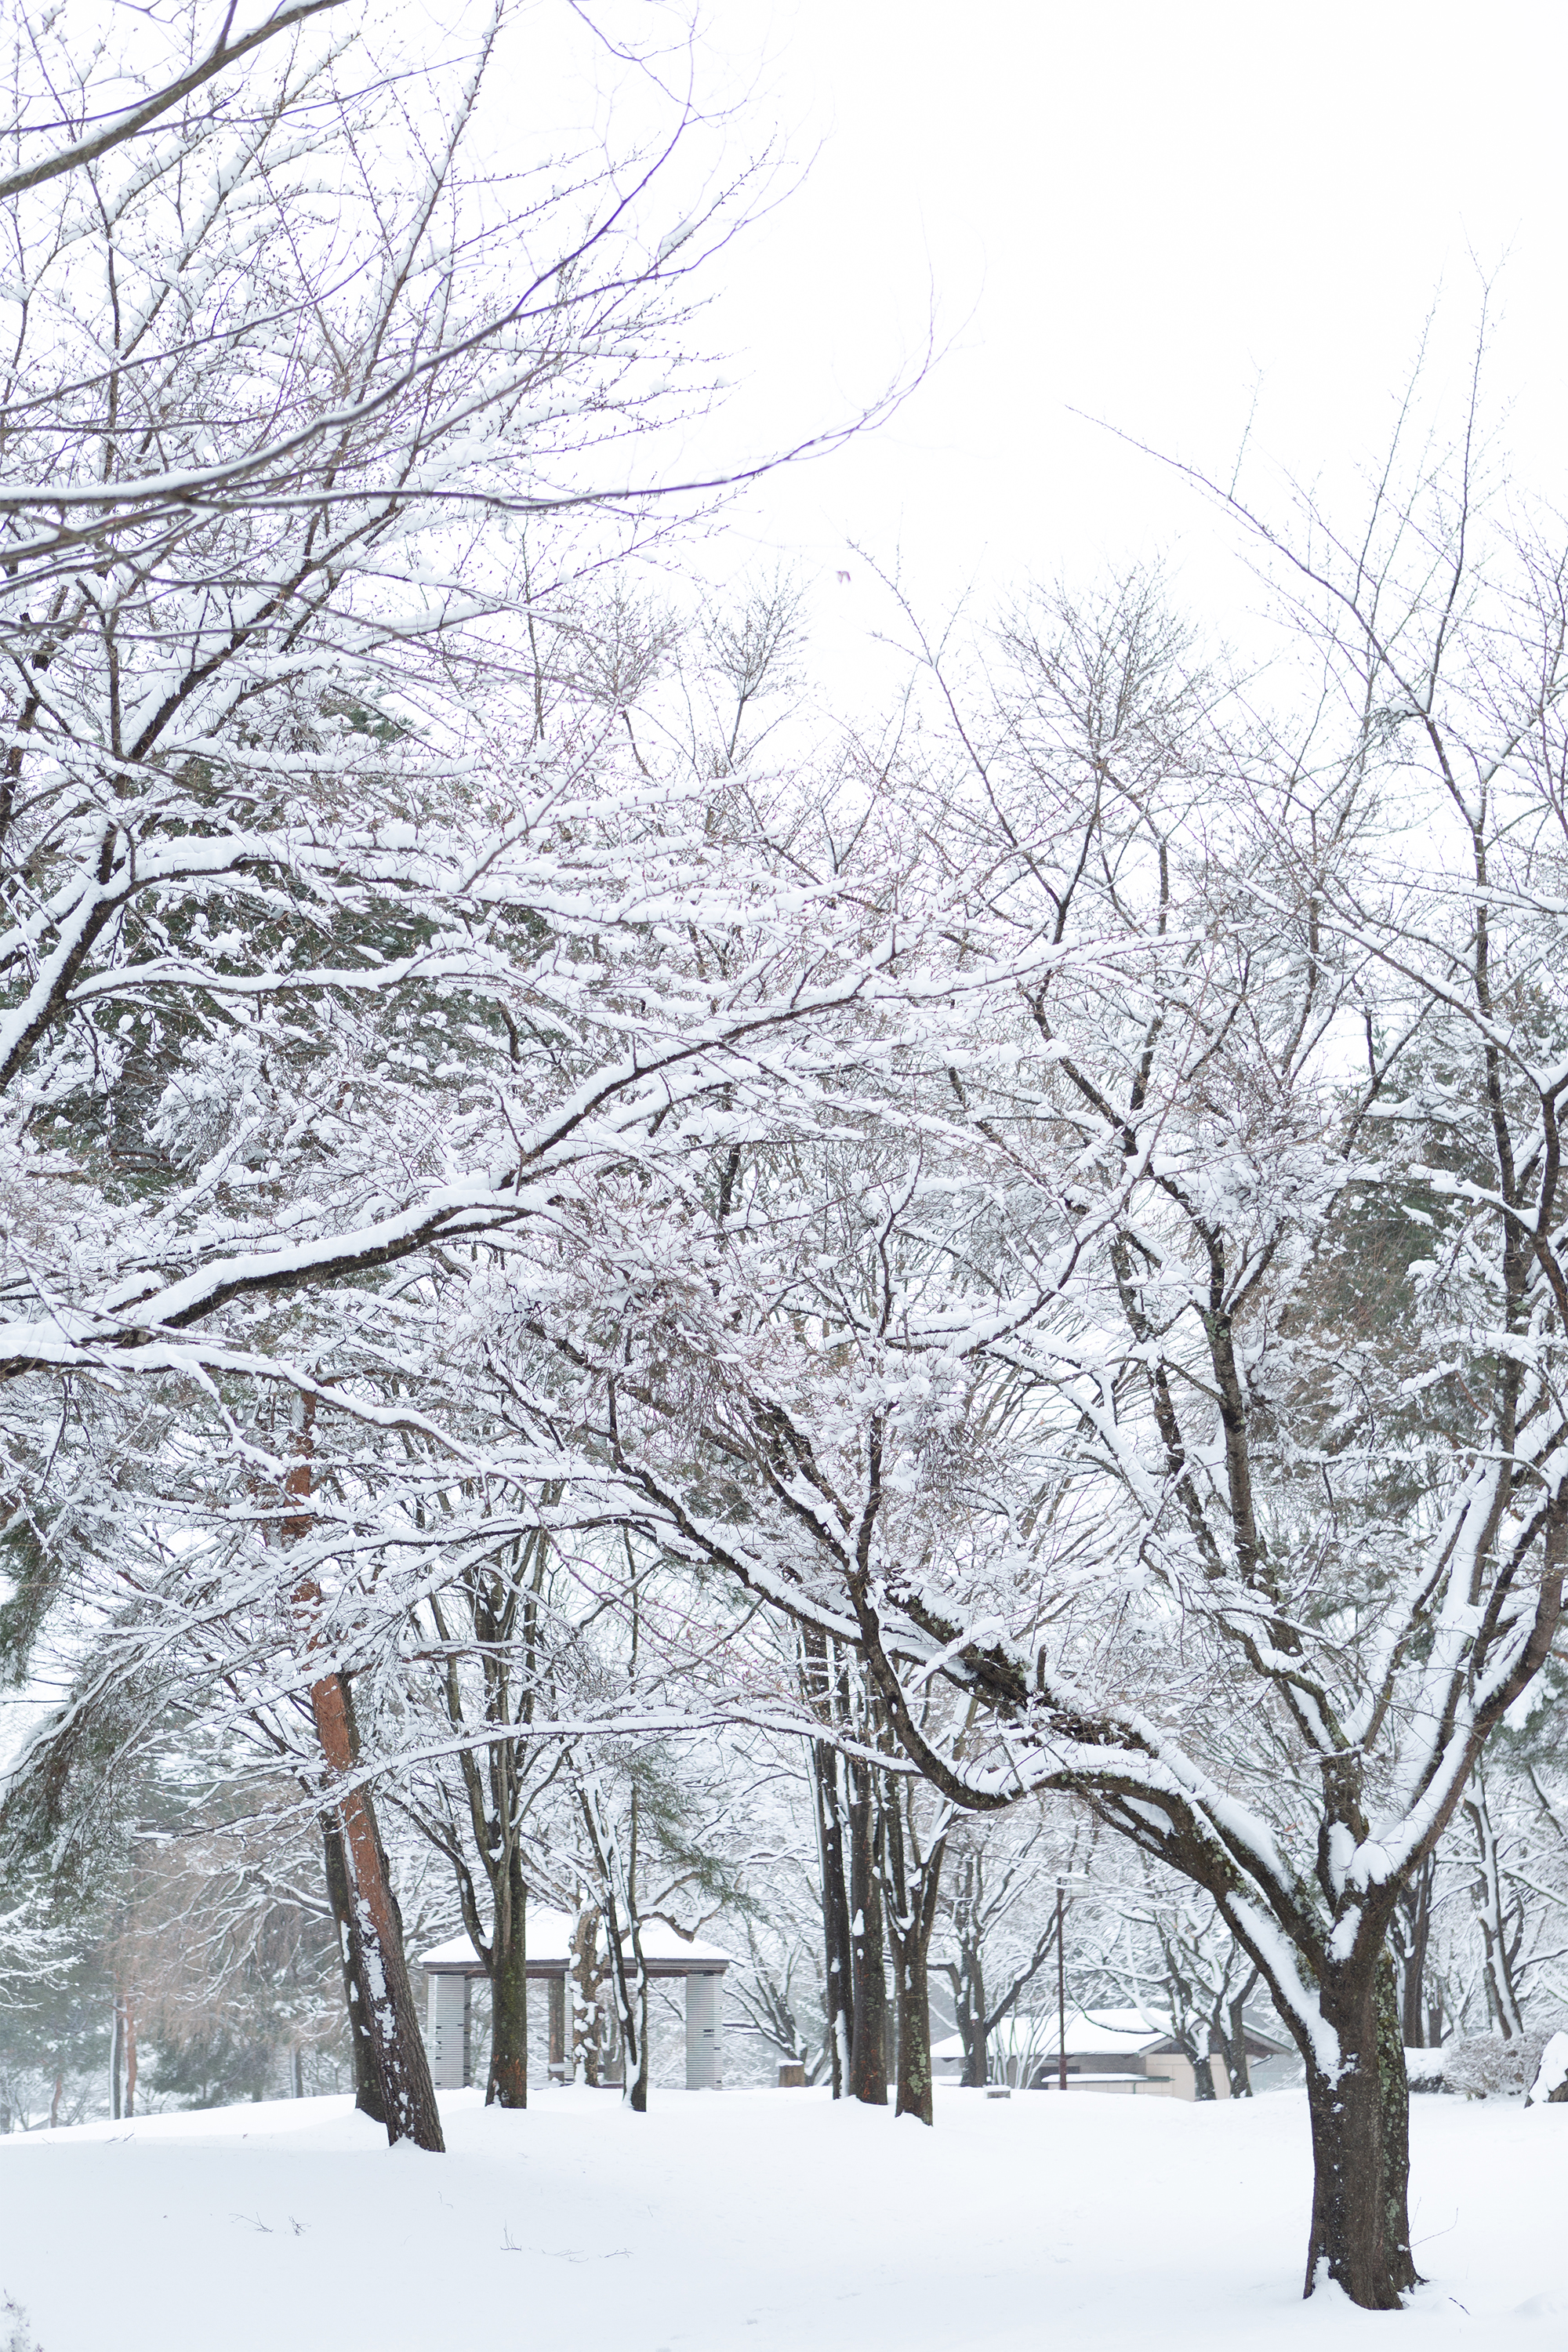 冬の風景 木に積もった雪 無料の高画質フリー写真素材 イメージズラボ